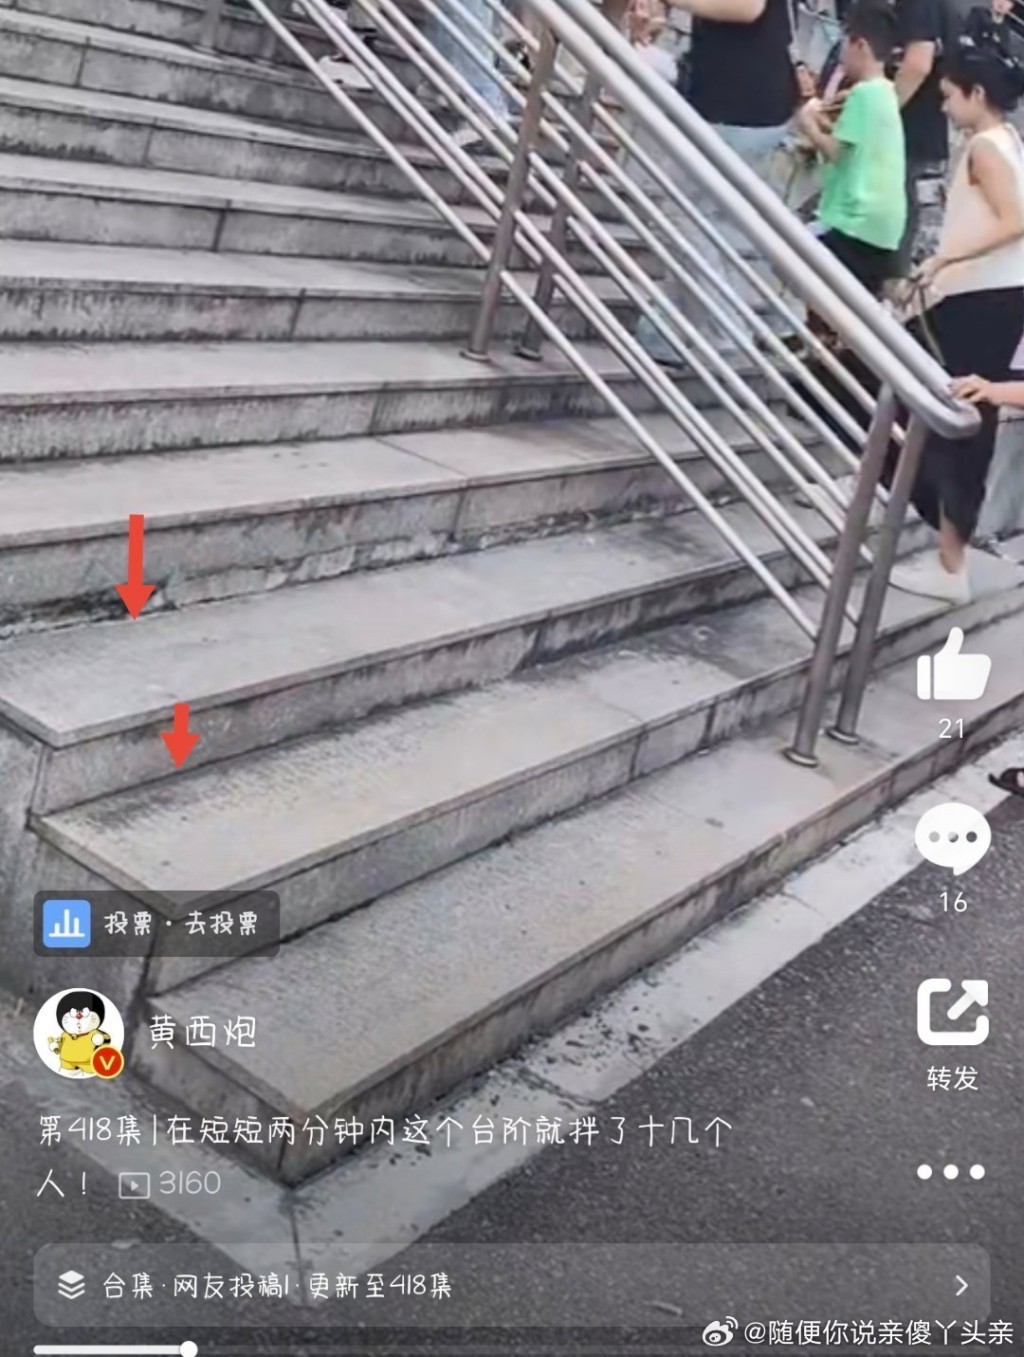 有網民發現樓梯設計有古怪，易令途人產生錯覺，容易絆倒。